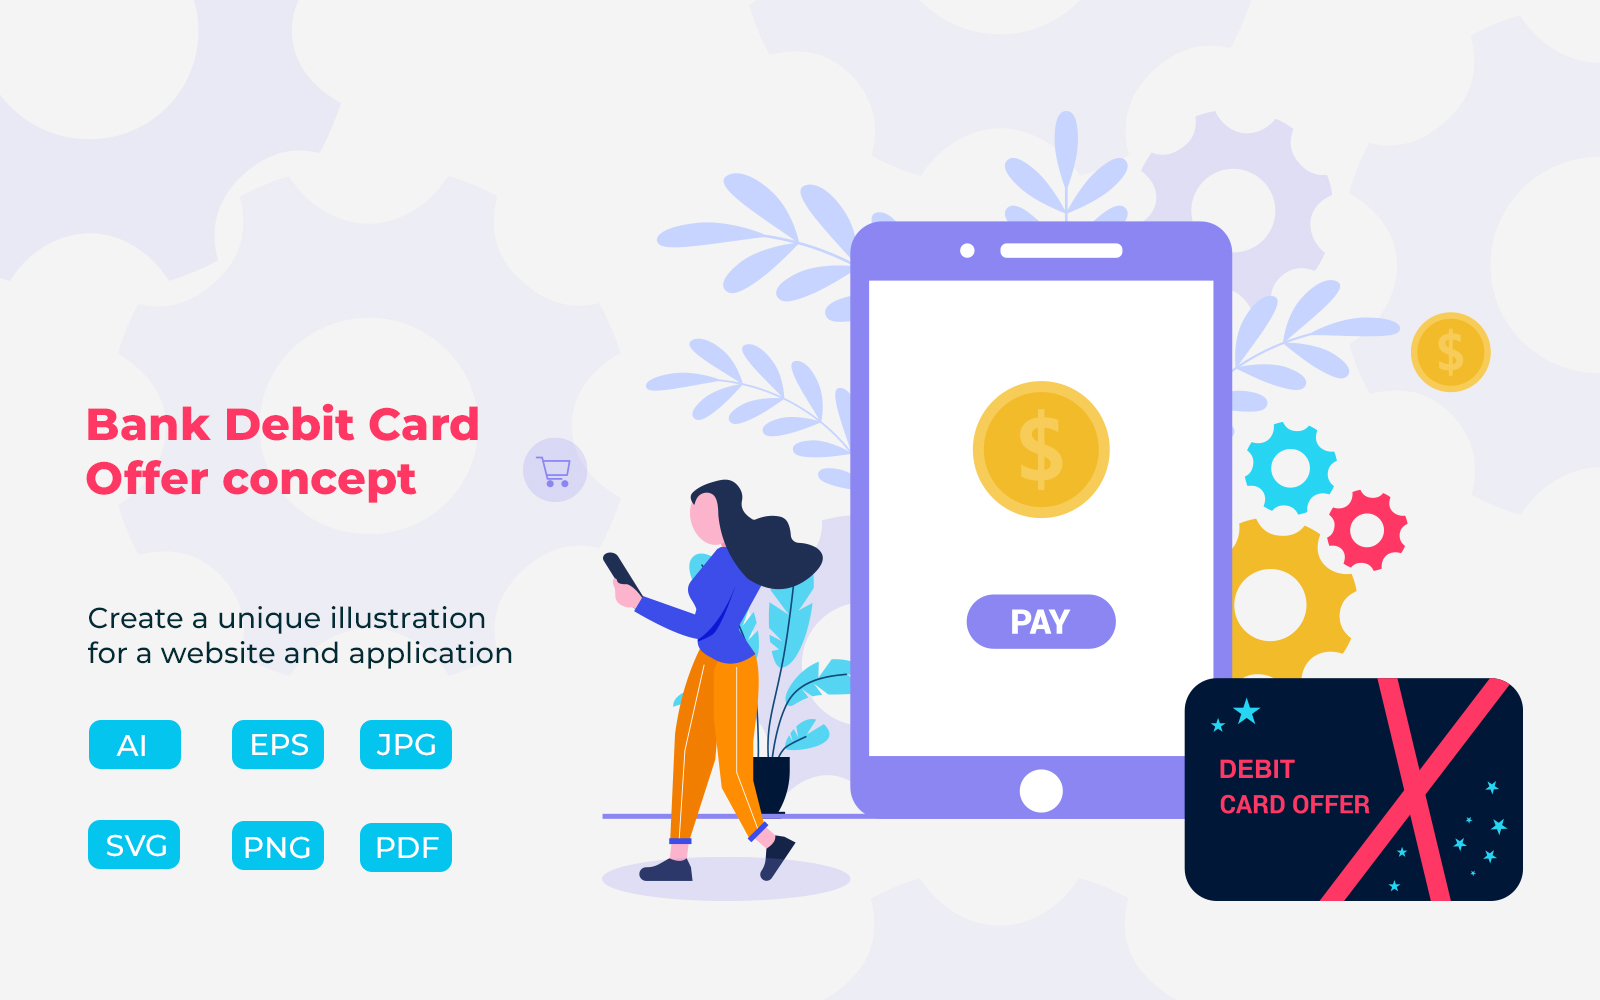 Bank Debit card offer concept illustration